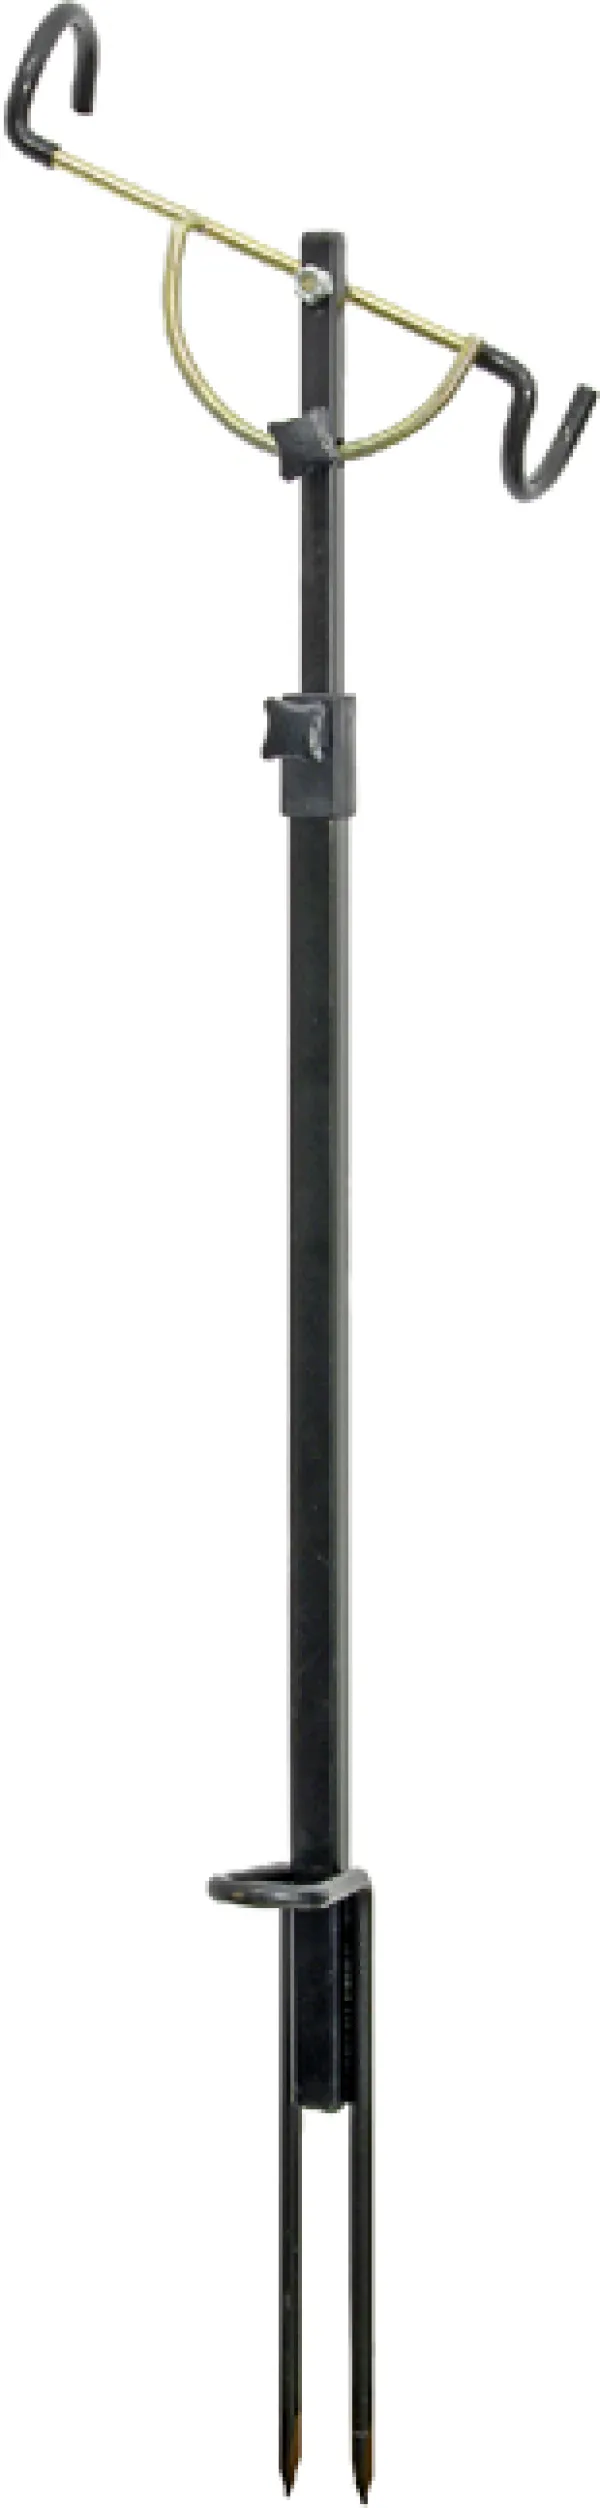 KONGER Adjustable Rod Rest 75-90cm